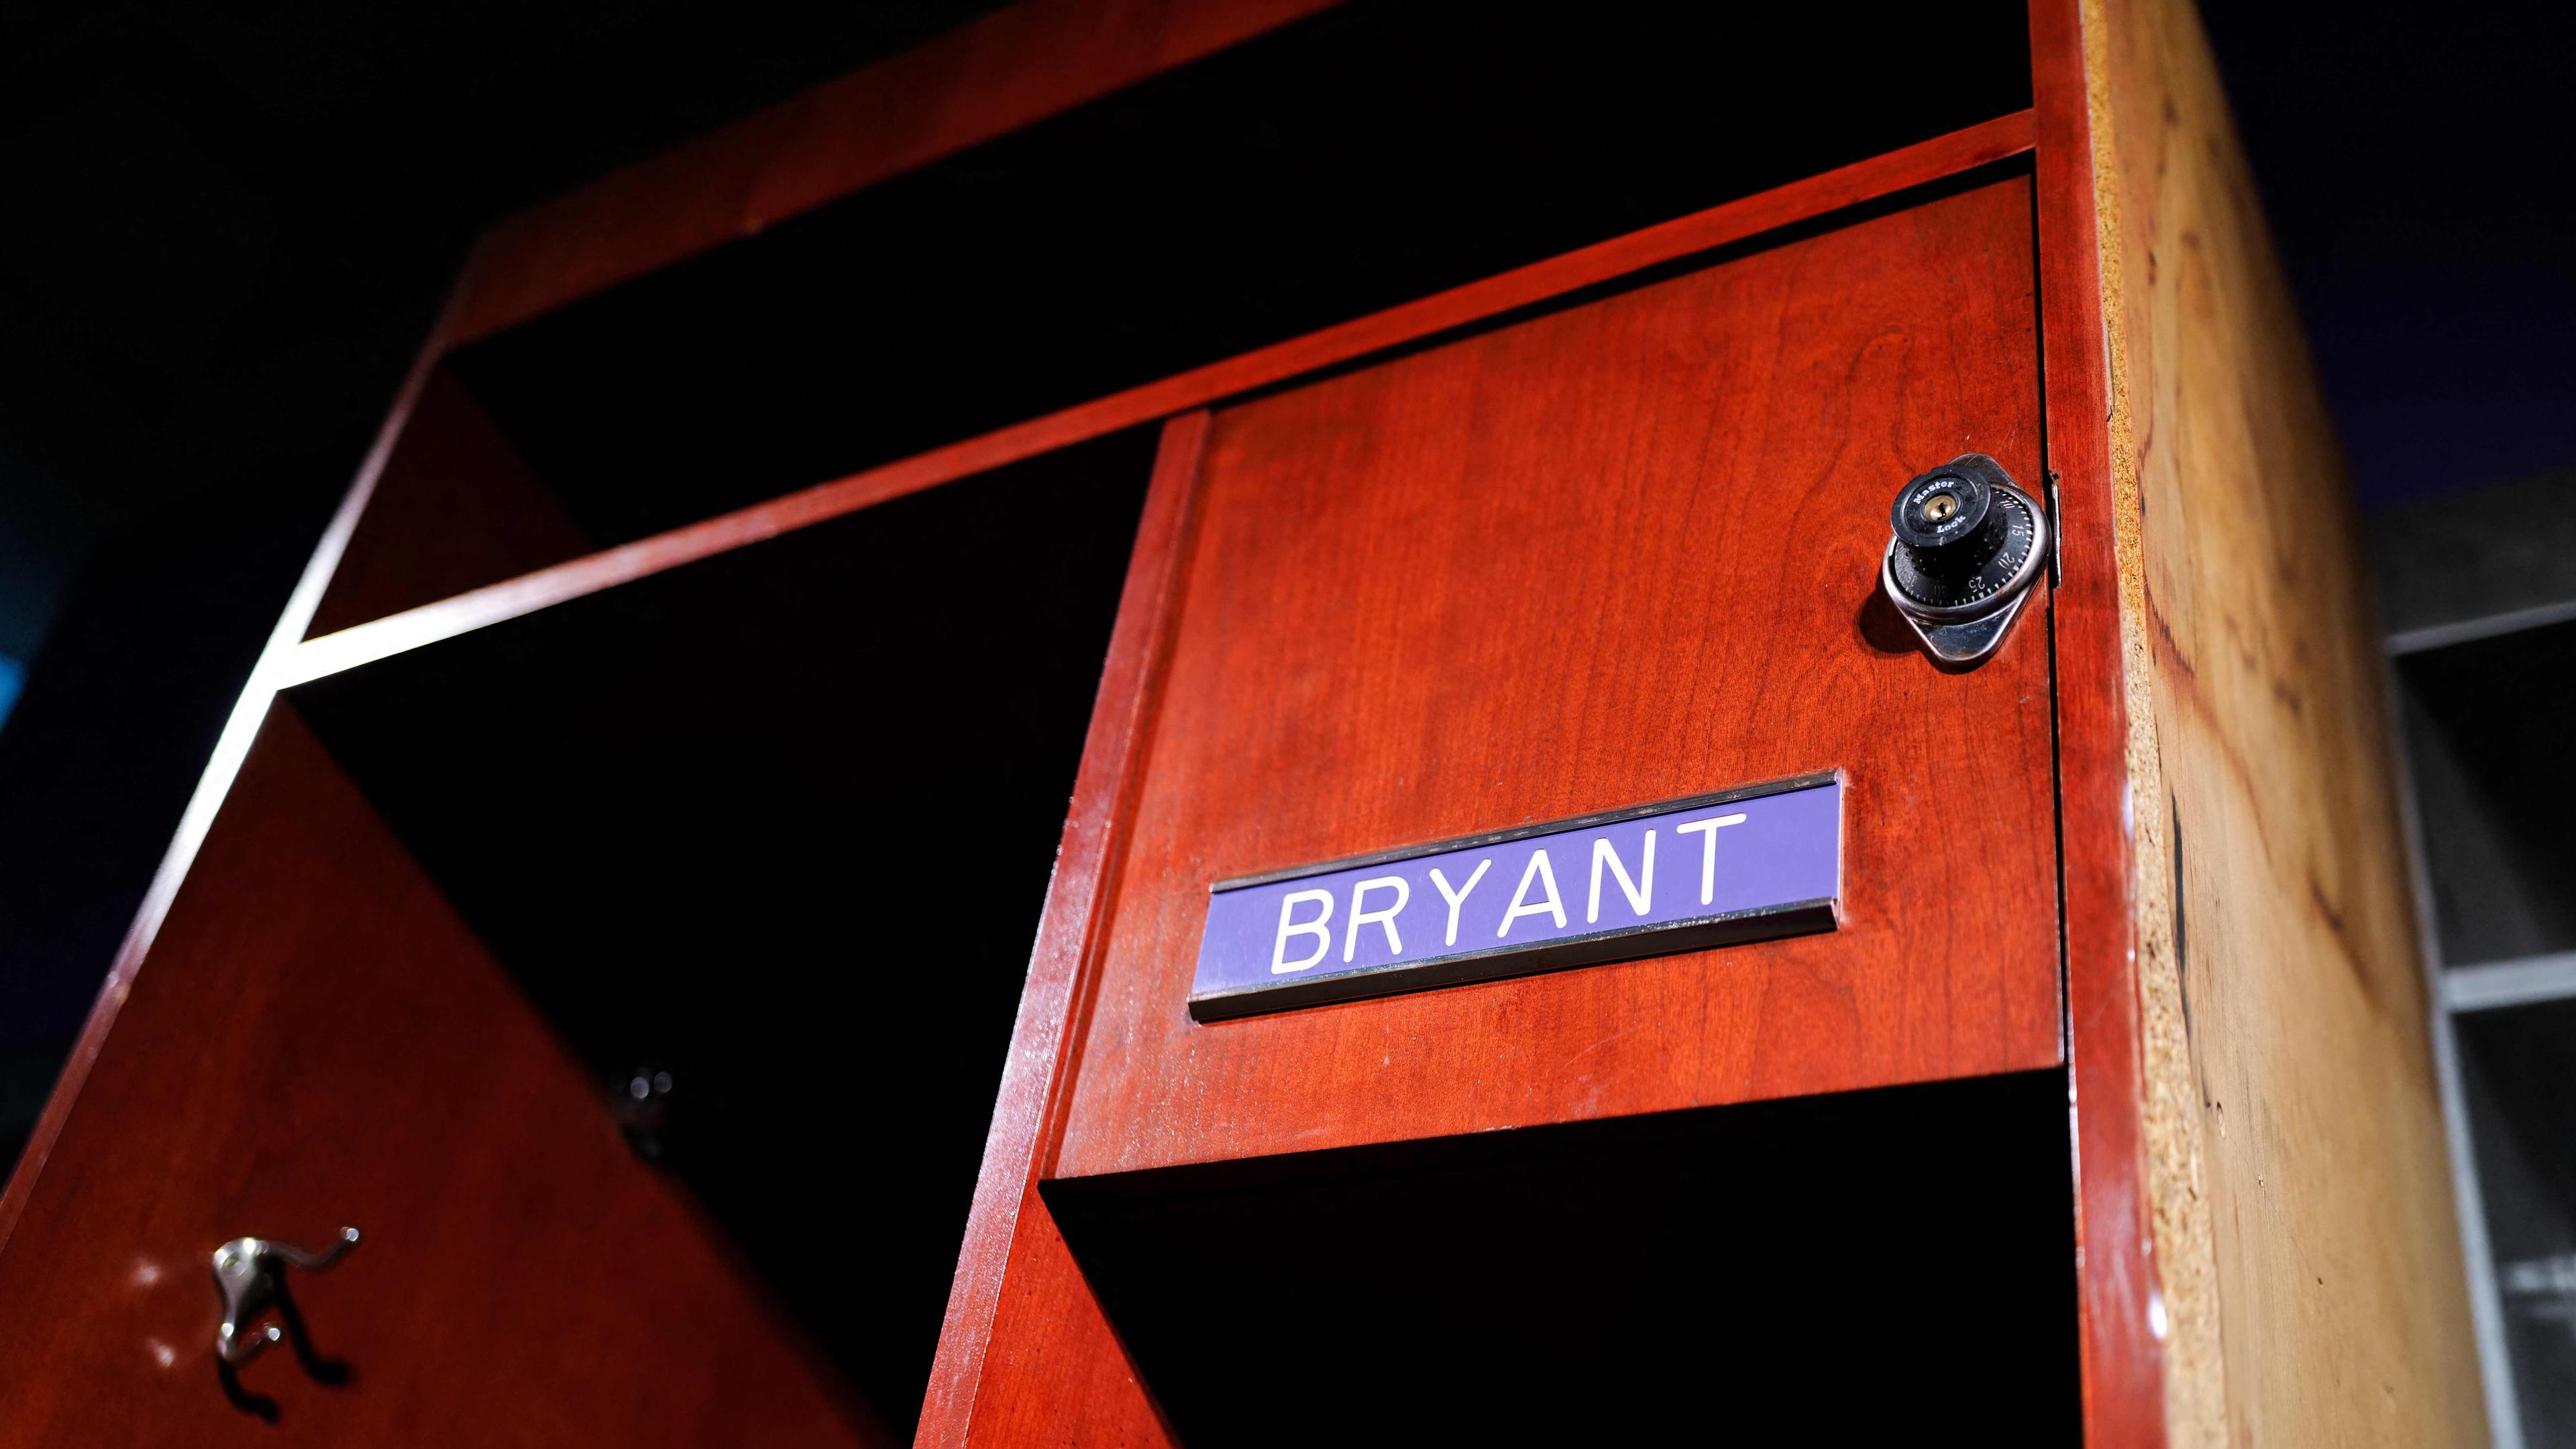 Der Spind des US-Basketballspielers Kobe Bryant im Staples Center wird im Auktionshaus Sotheby's in New York City ausgestellt